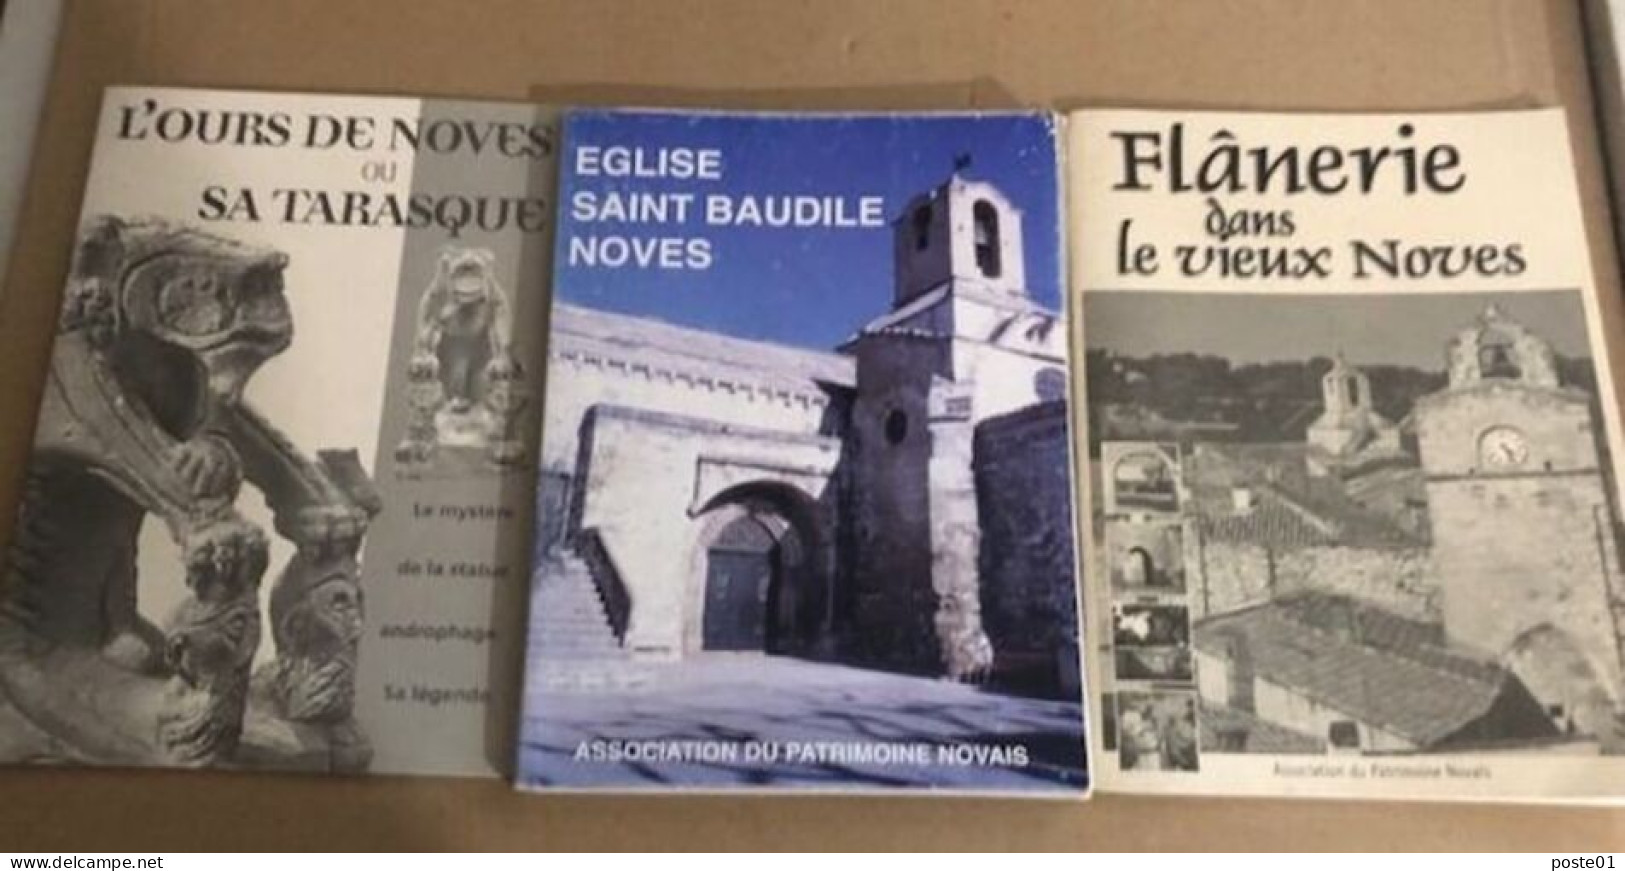 3 Fascicules Sur Noves / L'ours De Noves Ou Sa Tarasque -eglise Sainte Baudile Noves -flanerie Dans Le Vieux Noves - Unclassified